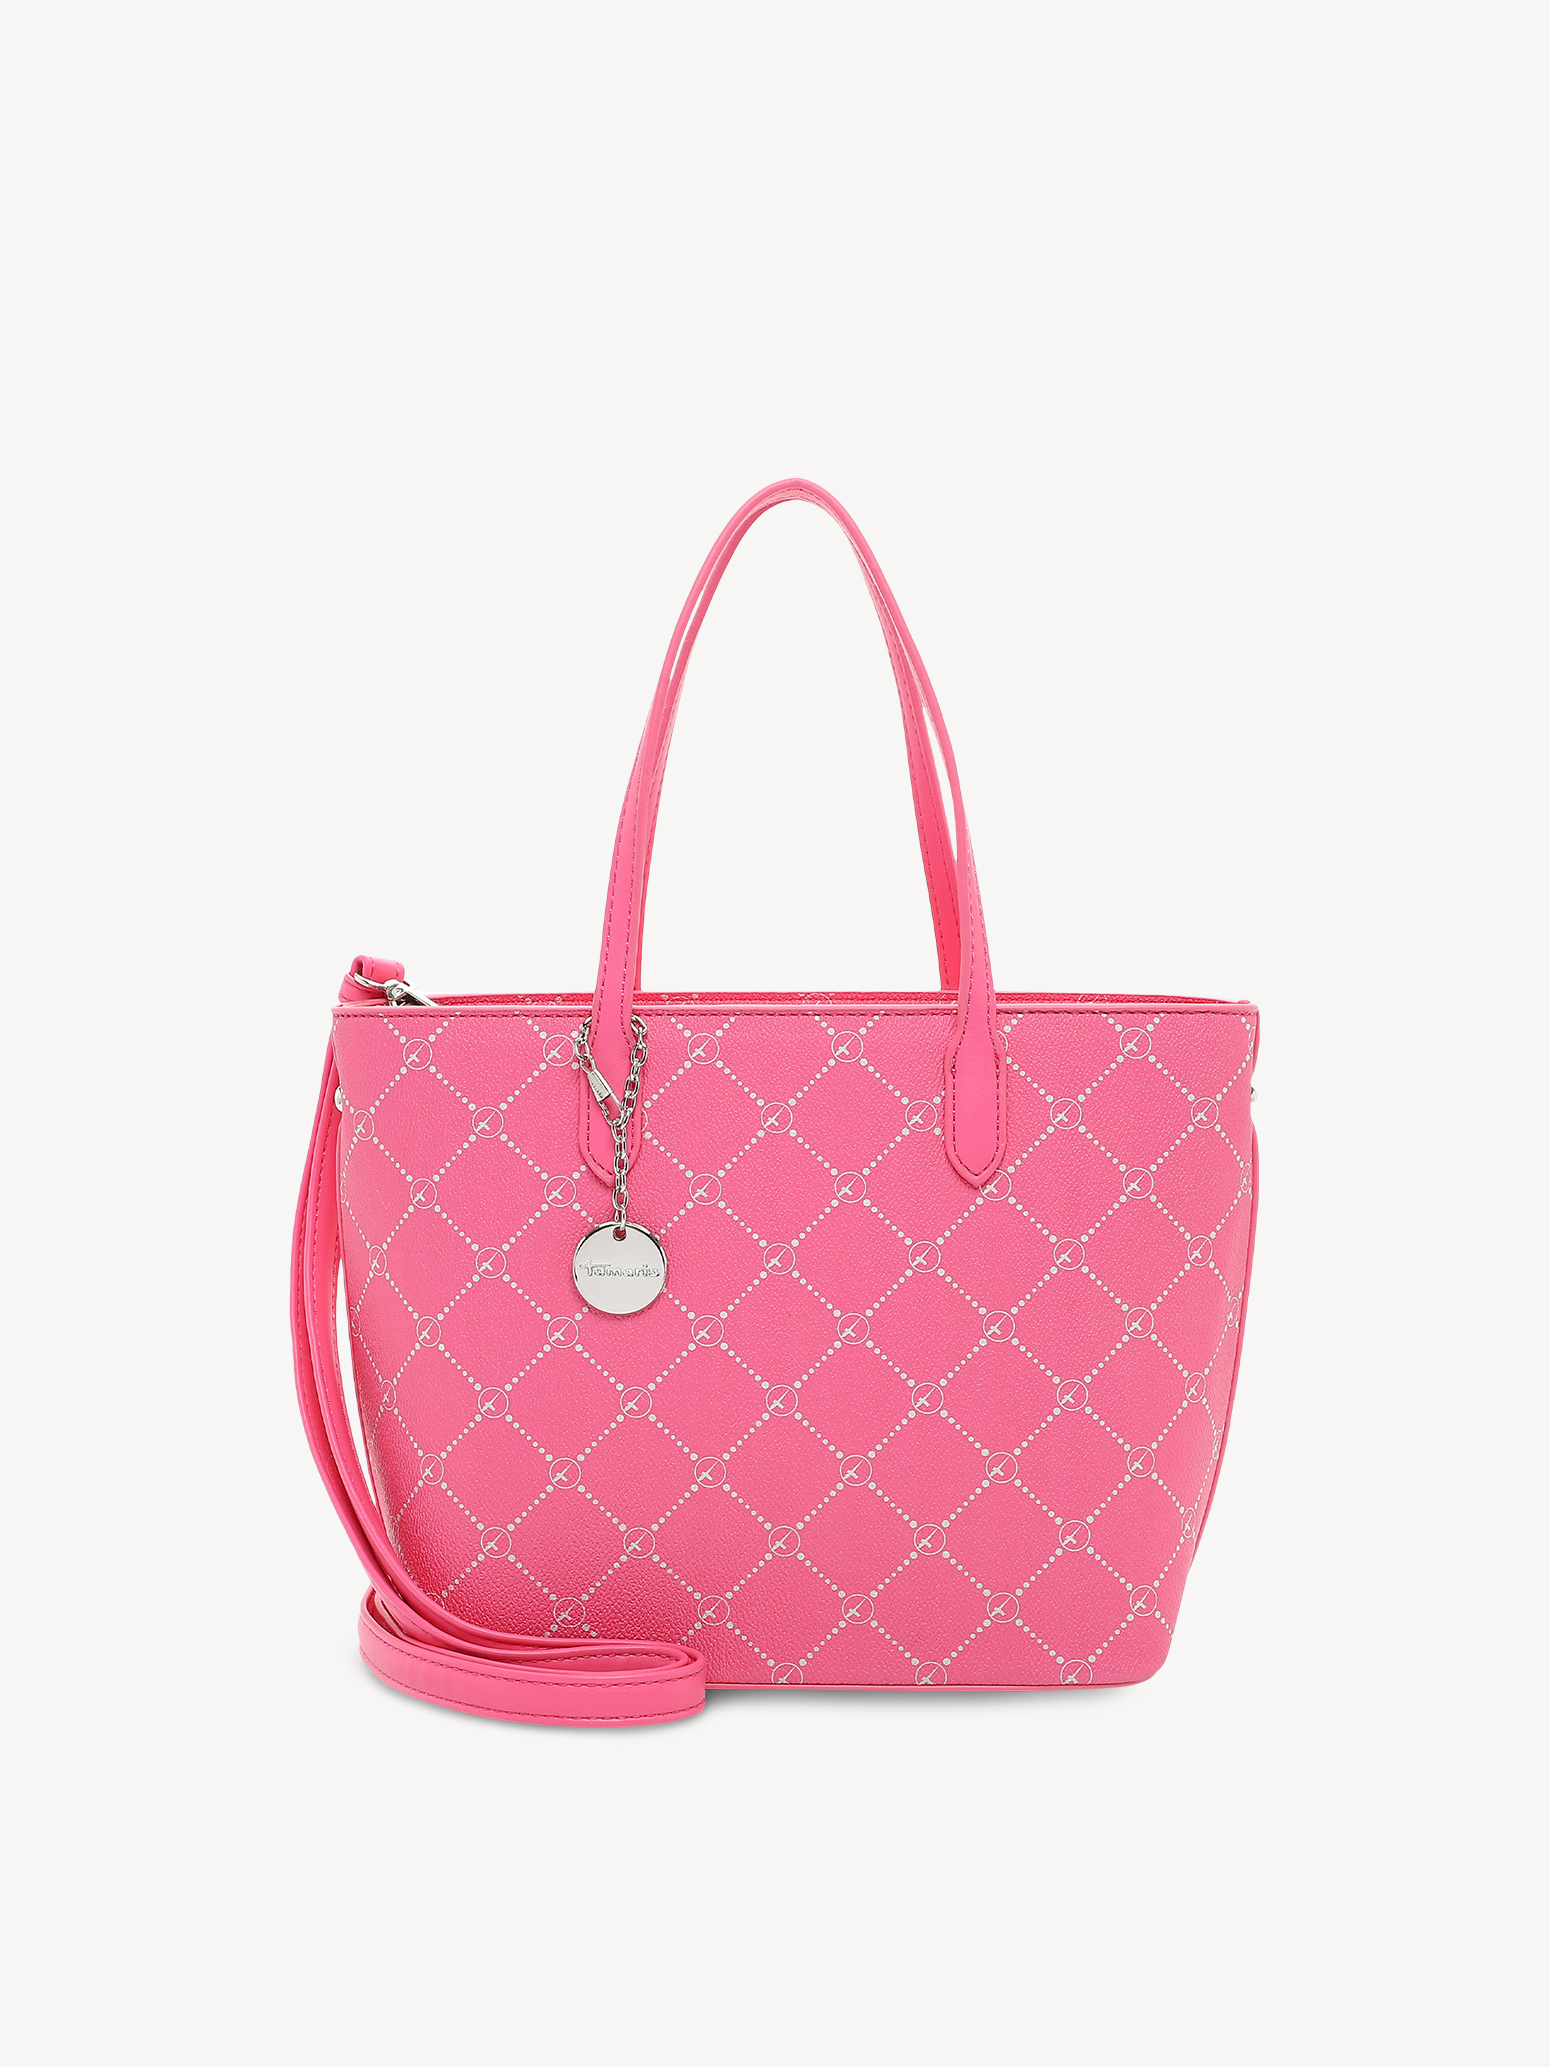 Shopping bag - pink